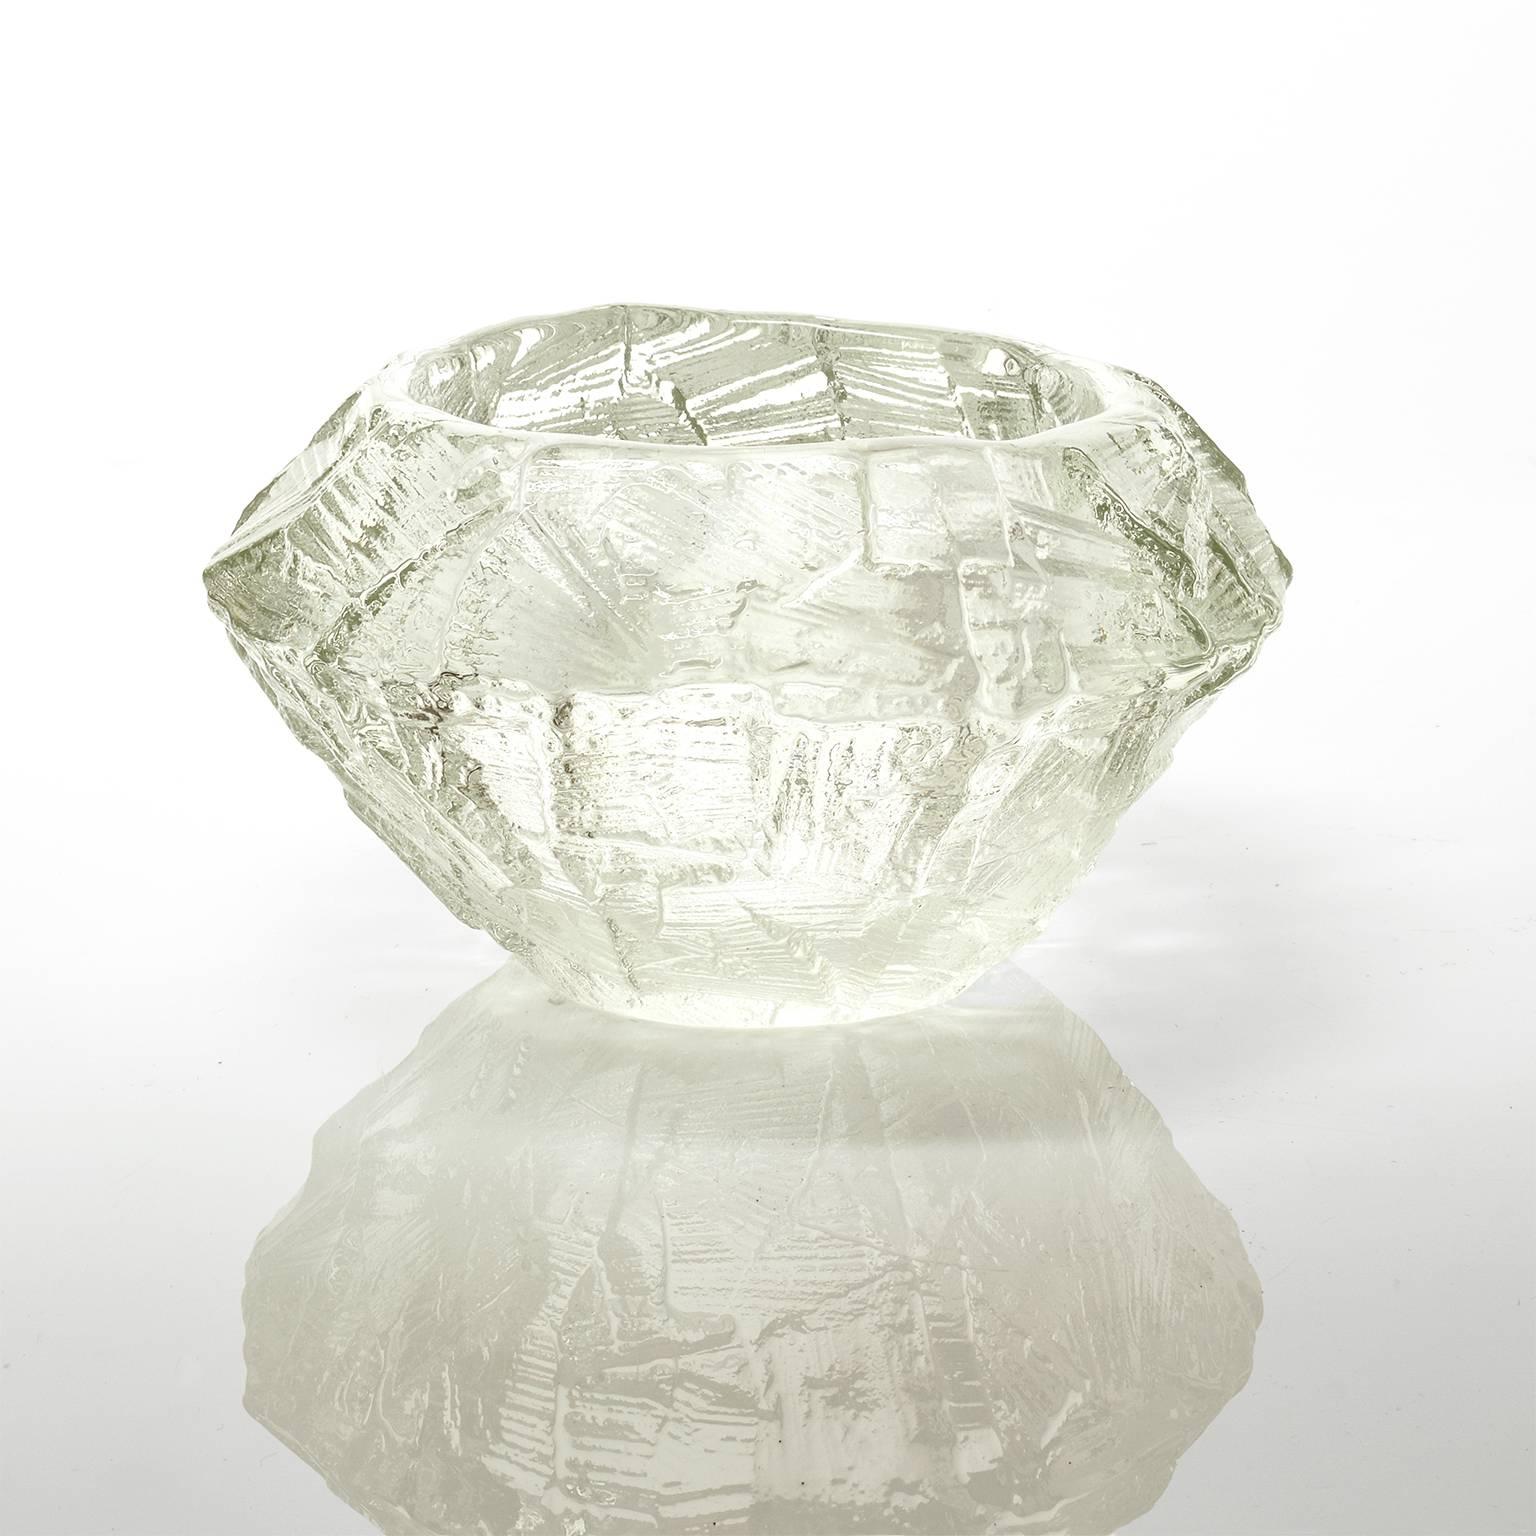 Gore Augustsson pour Ruda, Bol en verre transparent de style scandinave moderne du milieu du siècle, vers 1960.
 
Mesures : Hauteur 5